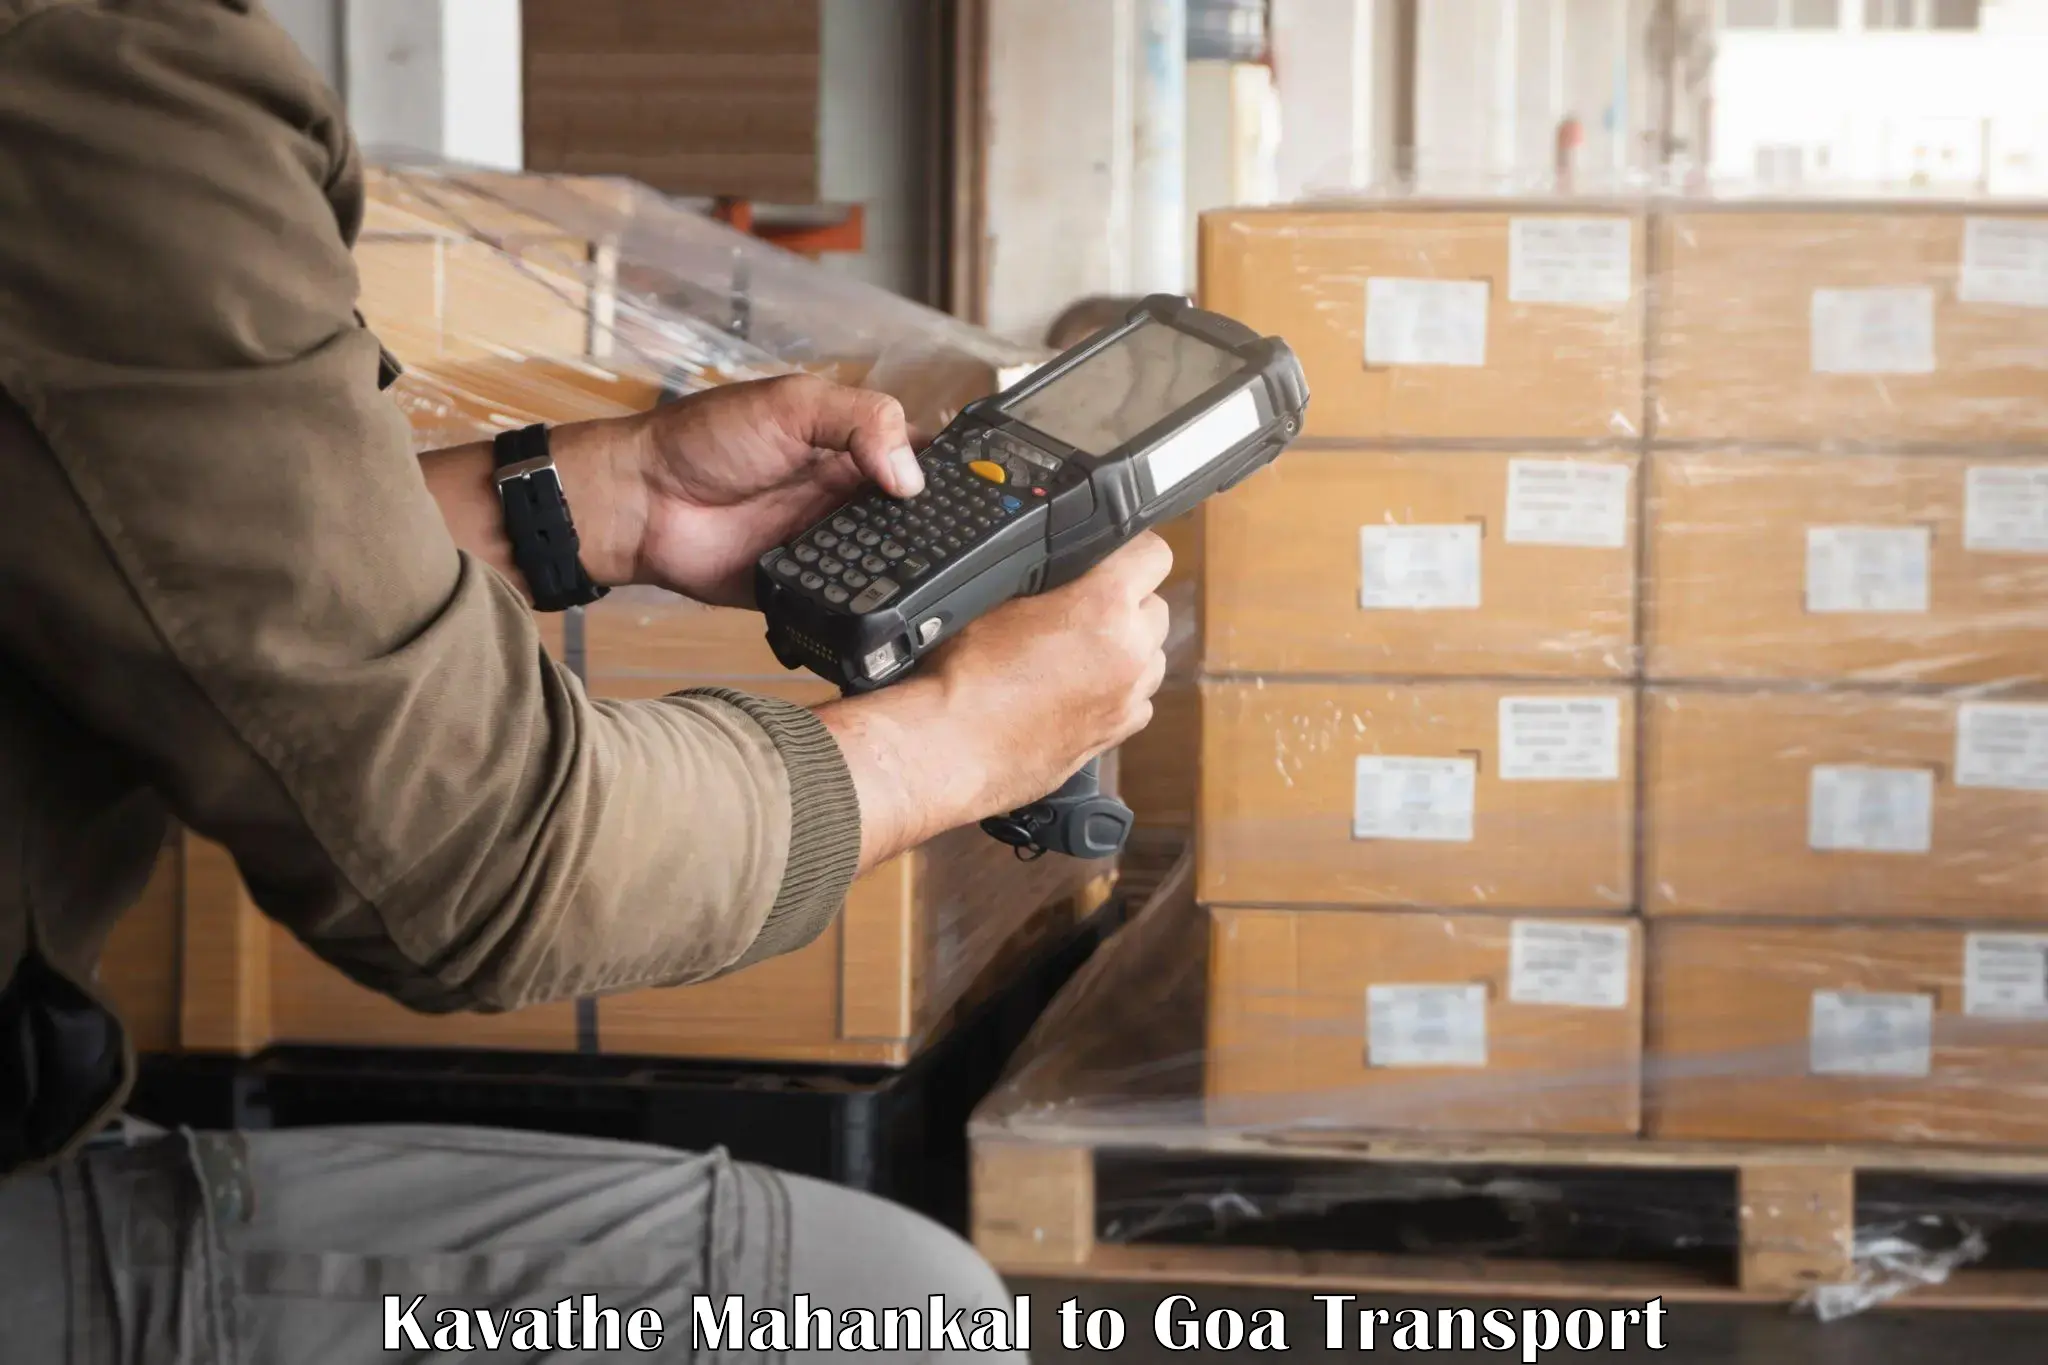 Commercial transport service Kavathe Mahankal to Vasco da Gama